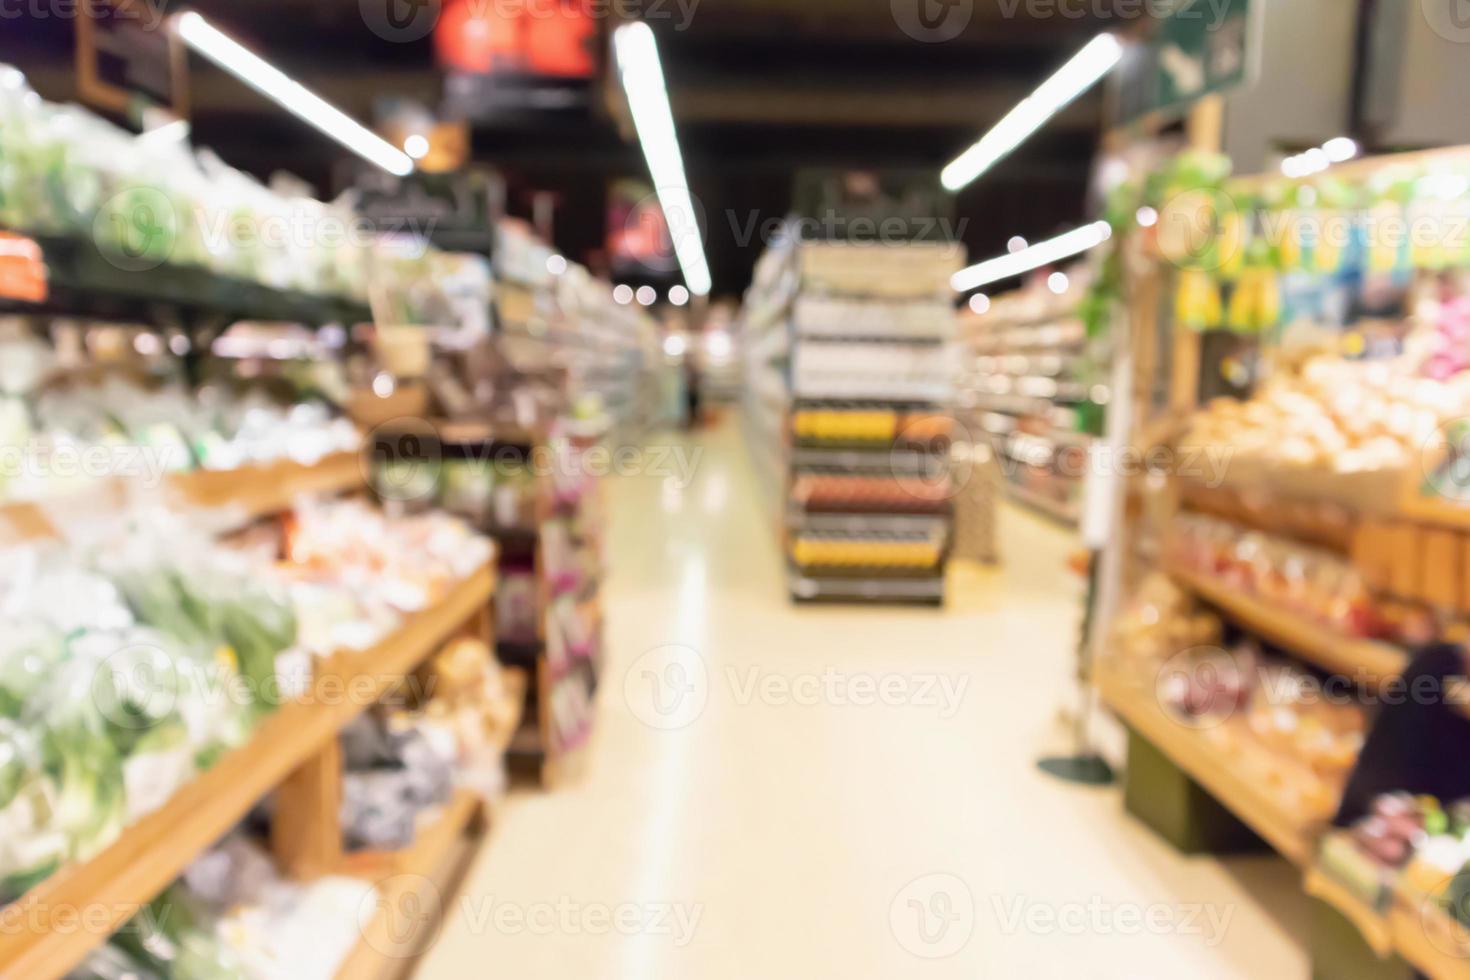 abstrato borrão de frutas frescas orgânicas e corredor de vegetais nas prateleiras do supermercado na loja de supermercado desfocado fundo claro bokeh foto